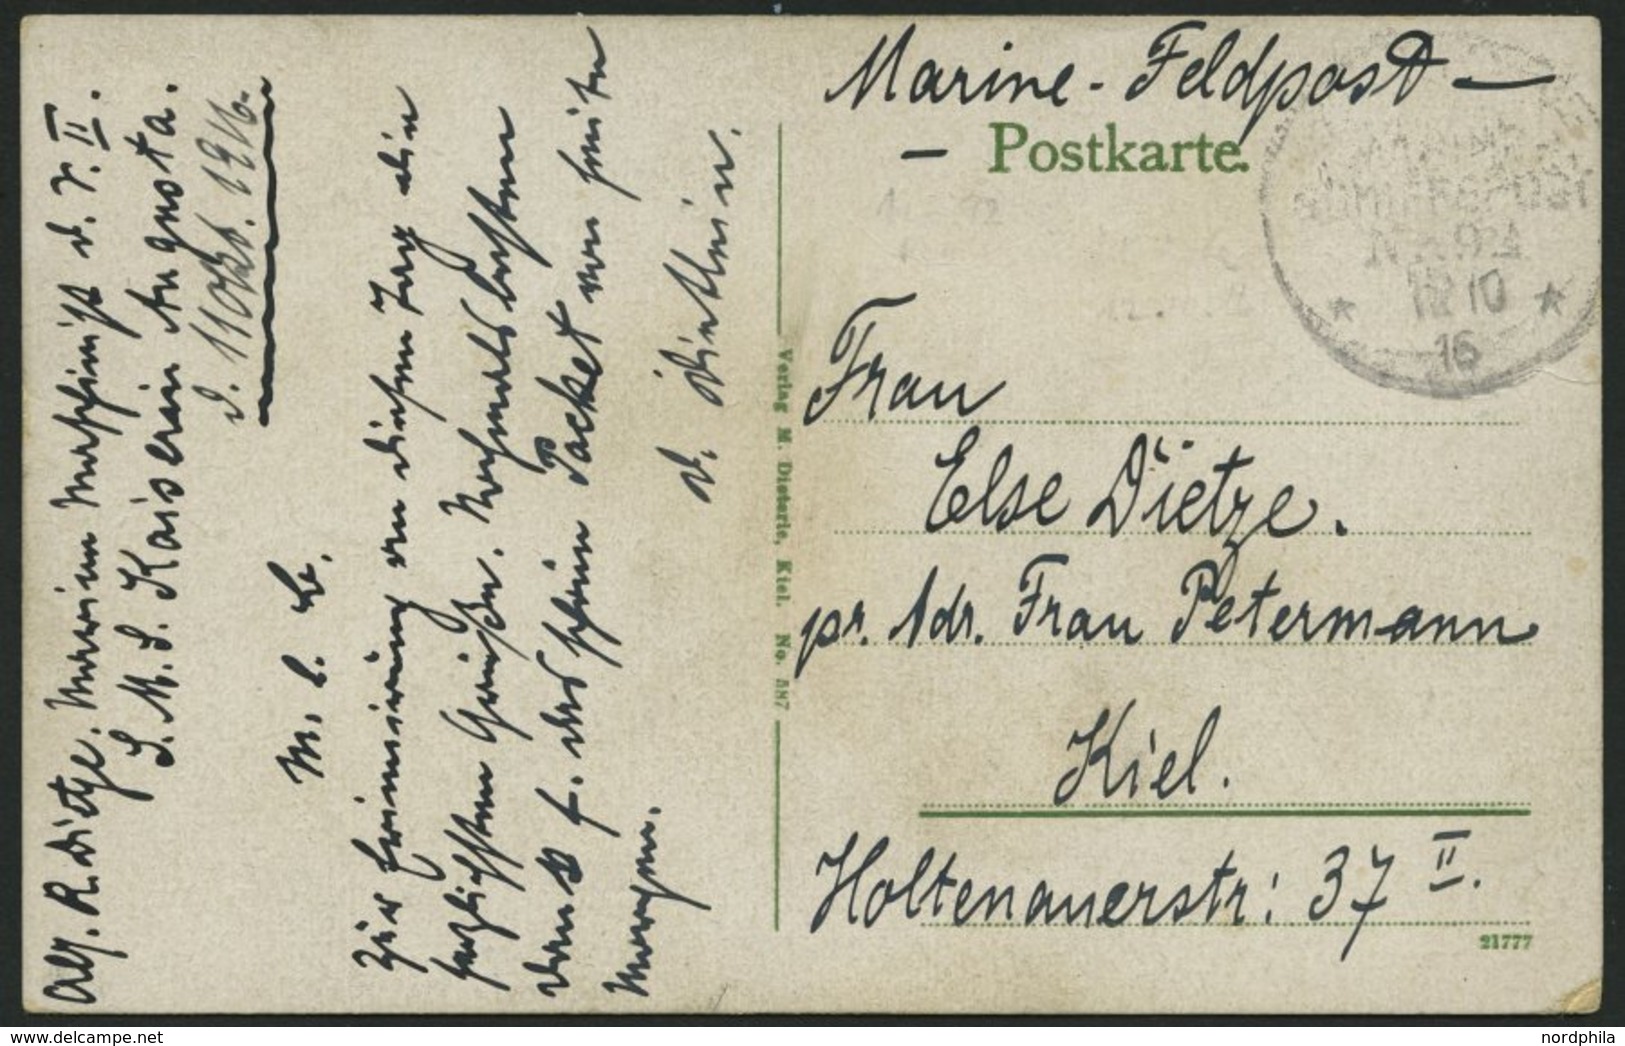 MSP VON 1914 - 1918 92 (Großer Kreuzer KAISERIN AUGUSTA), 11.10.1916, Feldpost-Ansichtskarte Von Bord Der Kaiserin Augus - Maritiem